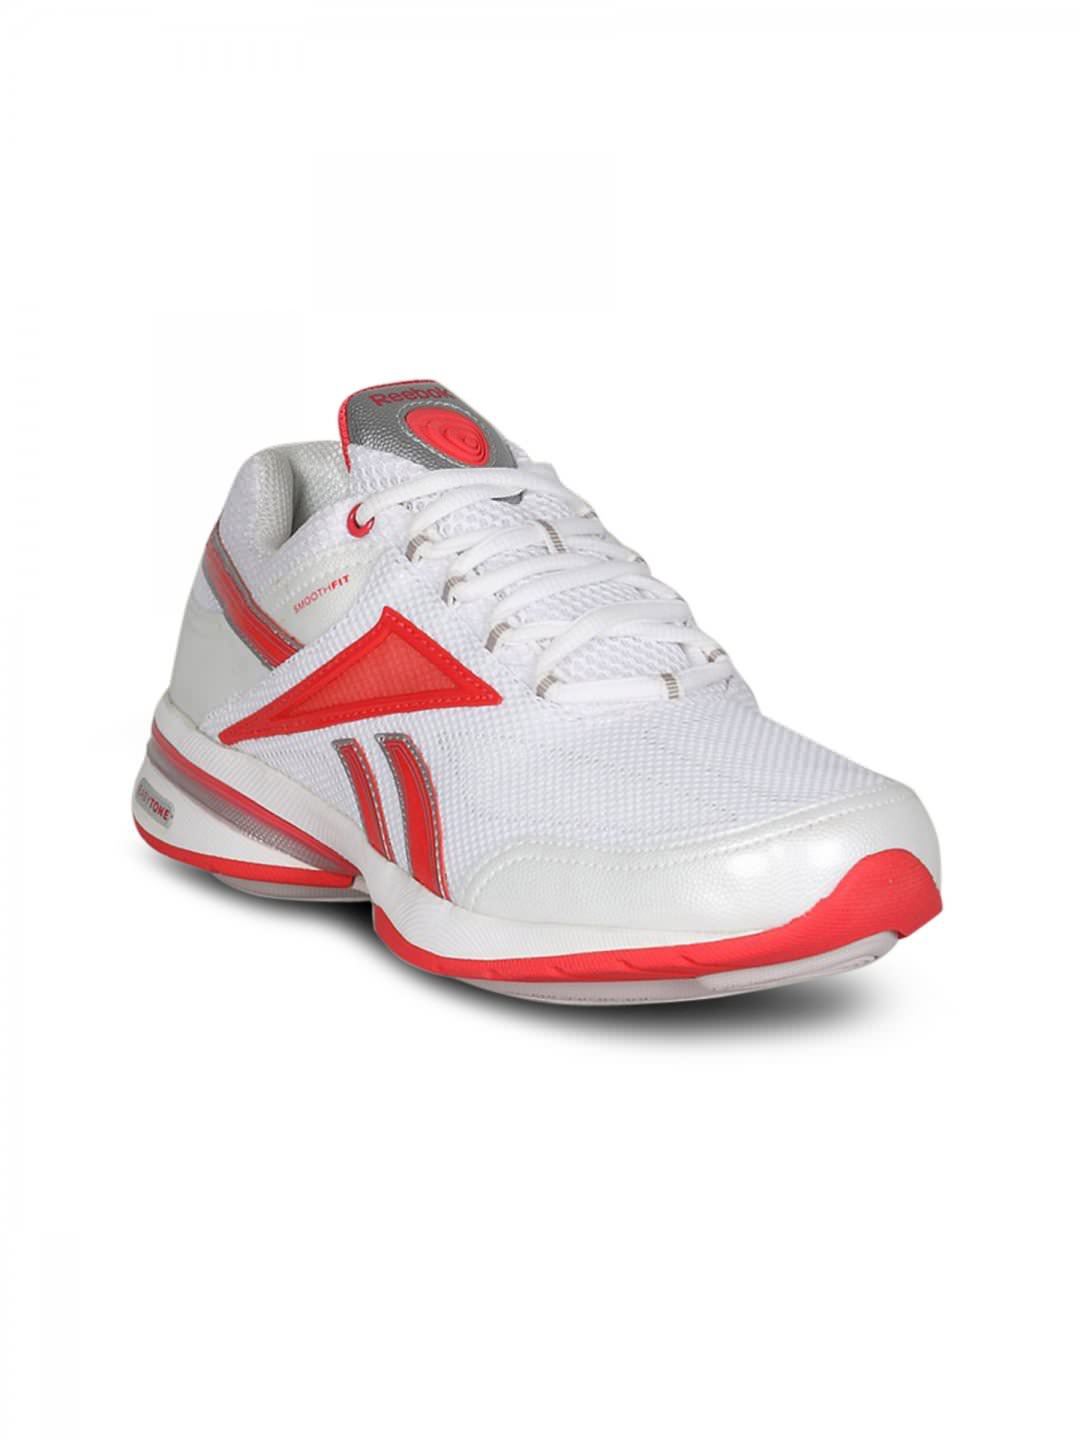 Buy Reebok Easytone Reenew White Red Shoe - Sports Shoes for Women | Myntra